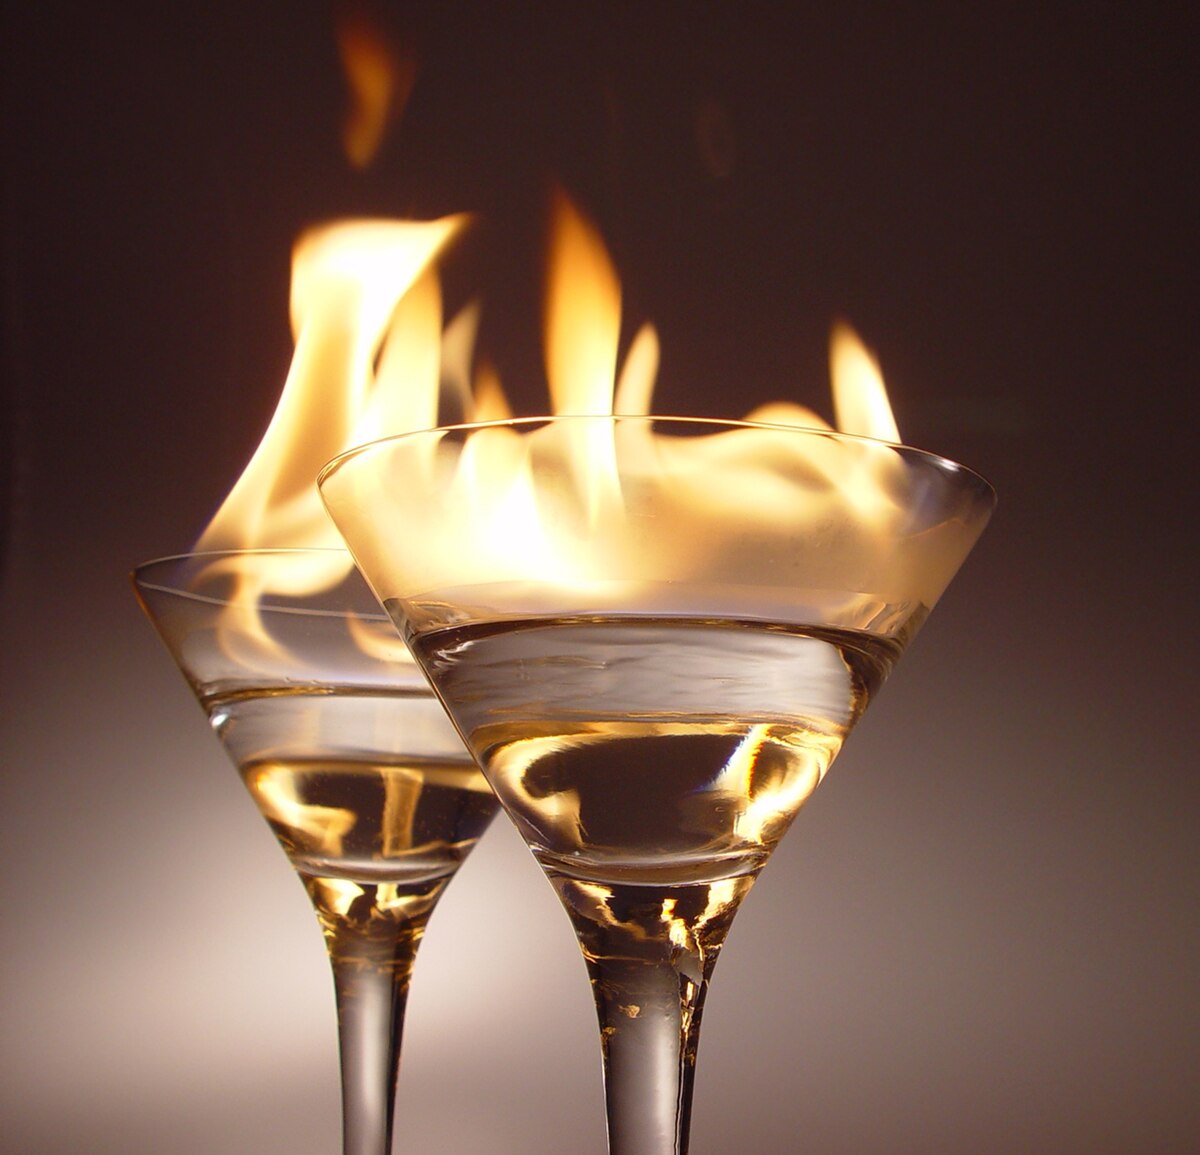 Bebida flameada - Wikipedia, la enciclopedia libre